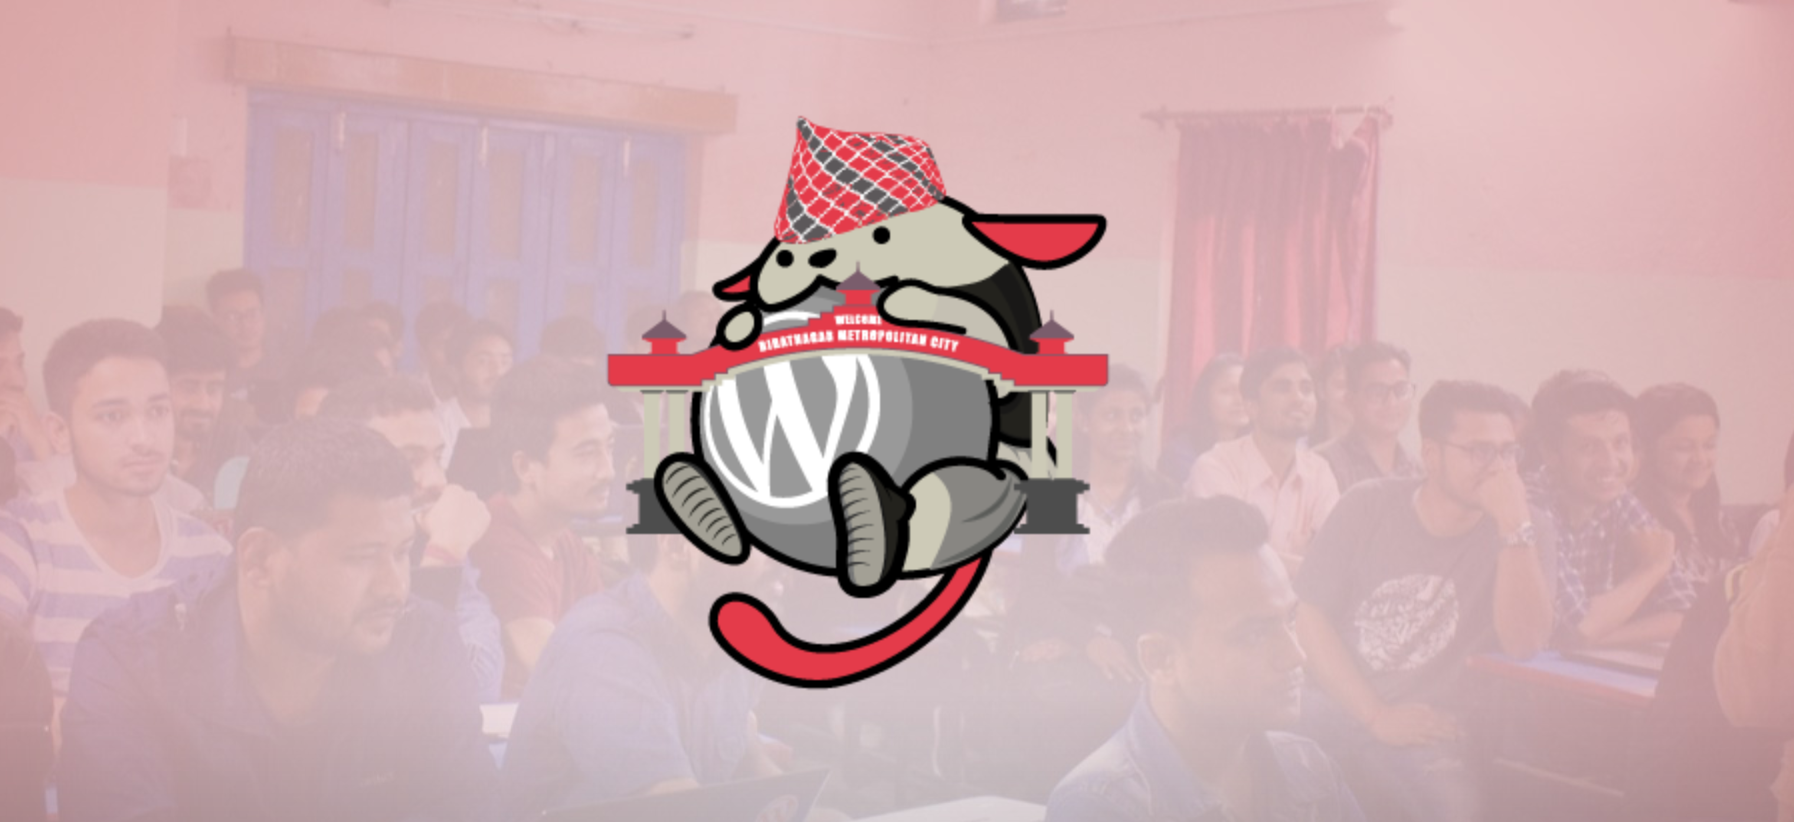 Biratnagar, Nepal to Host Its First WordCamp – December 22, 2018